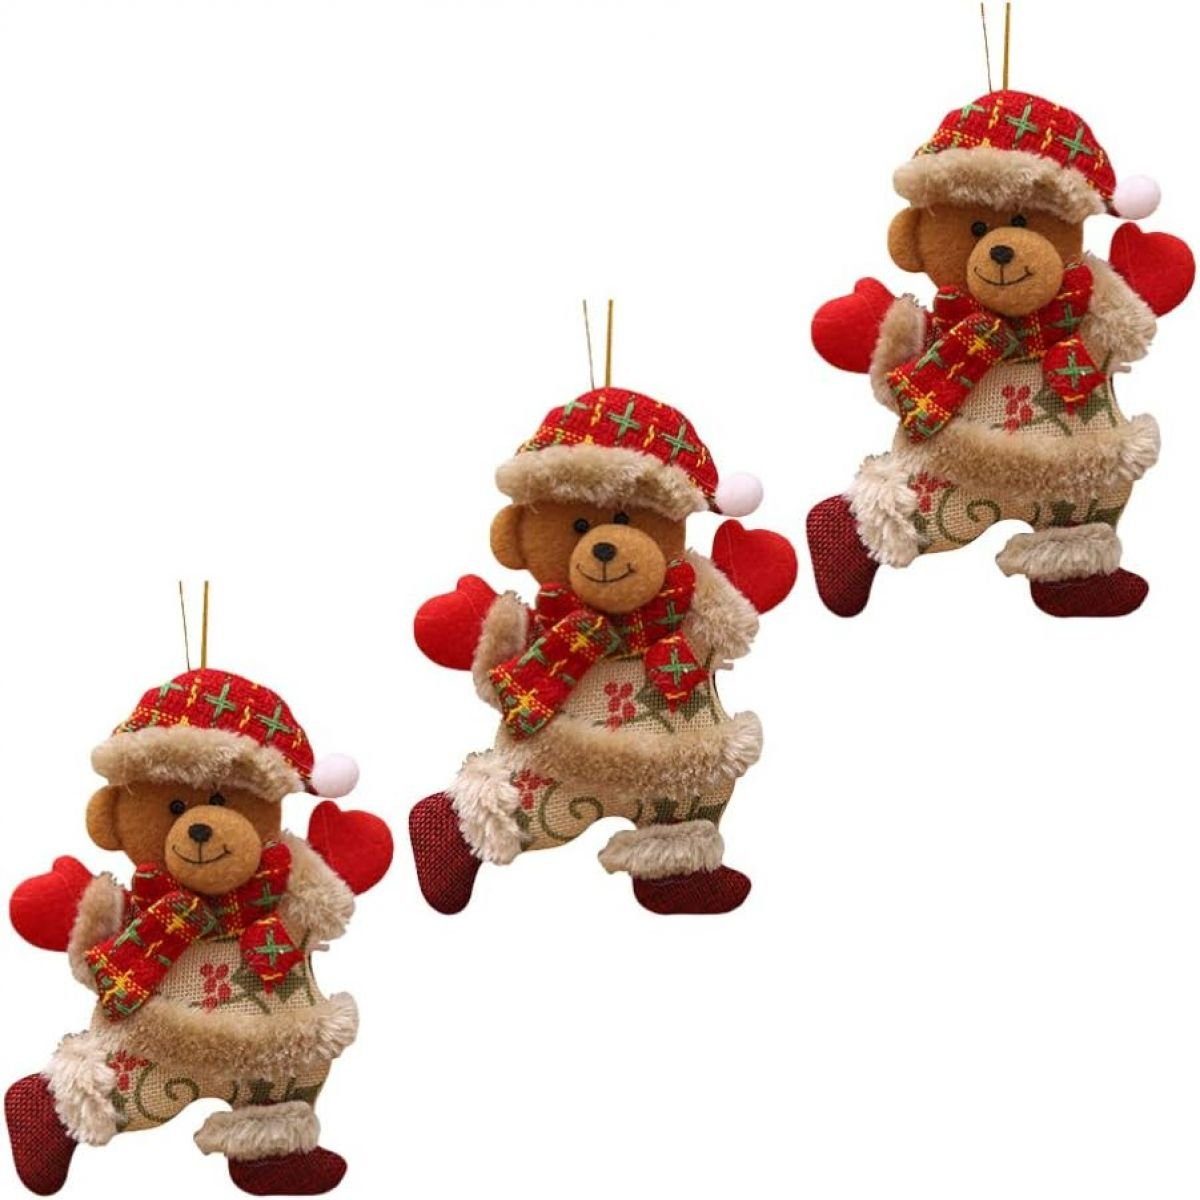 Jormftte Weihnachtsfigur 3 stücke Hängen Weihnachtsbär Ornamente für Party Weihnachtsbaum